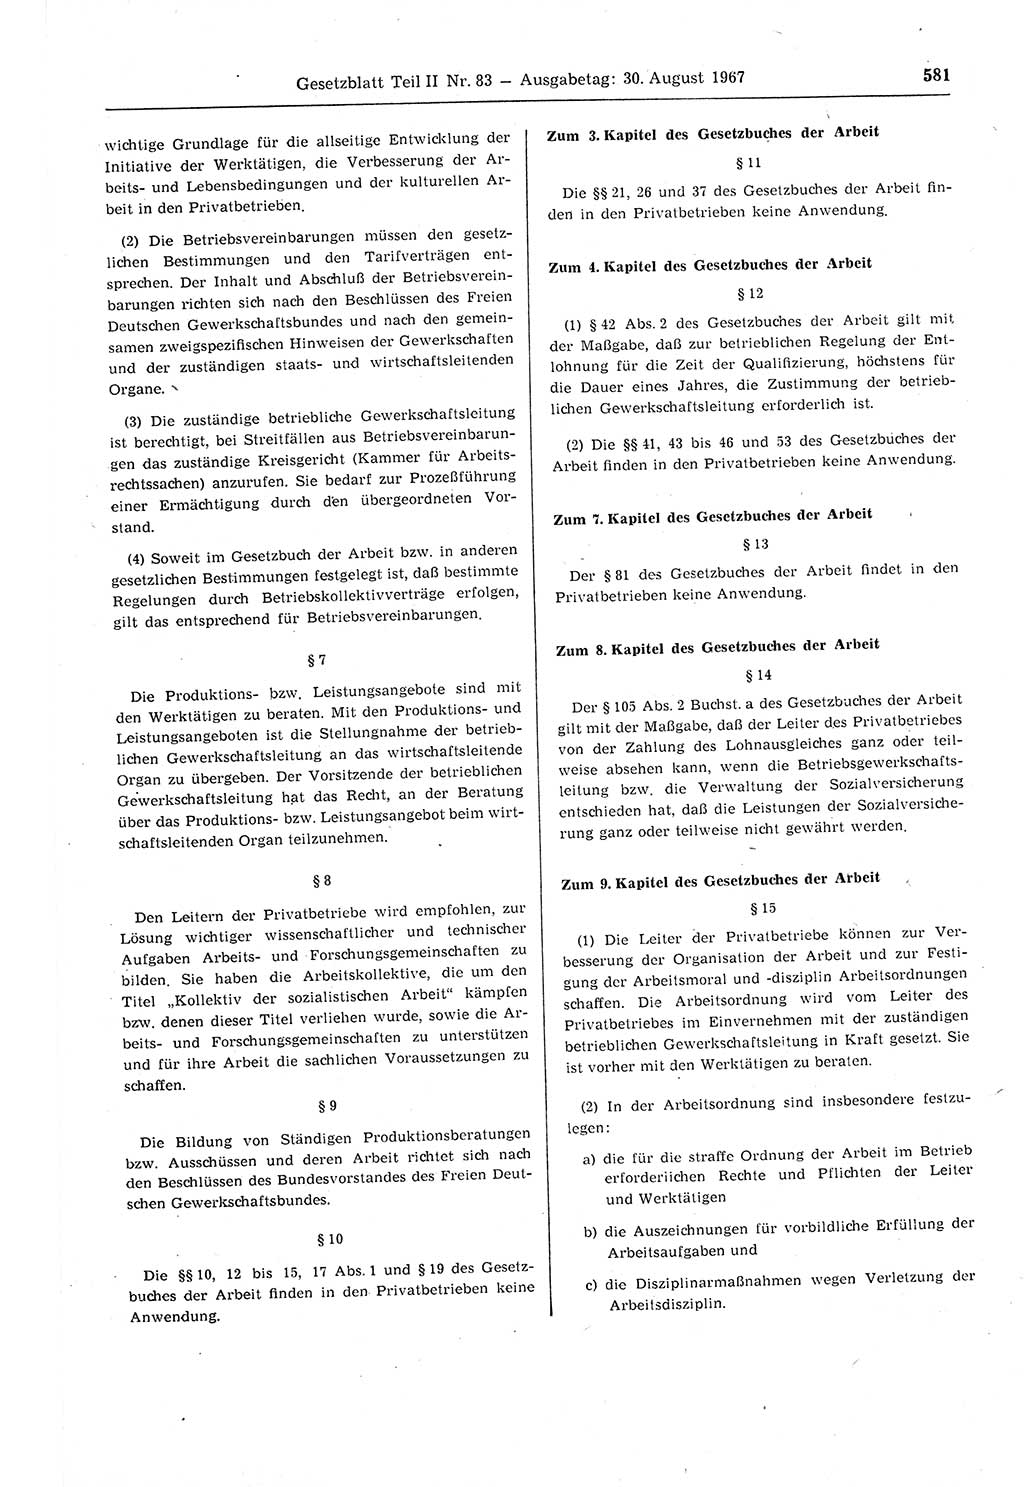 Gesetzblatt (GBl.) der Deutschen Demokratischen Republik (DDR) Teil ⅠⅠ 1967, Seite 581 (GBl. DDR ⅠⅠ 1967, S. 581)